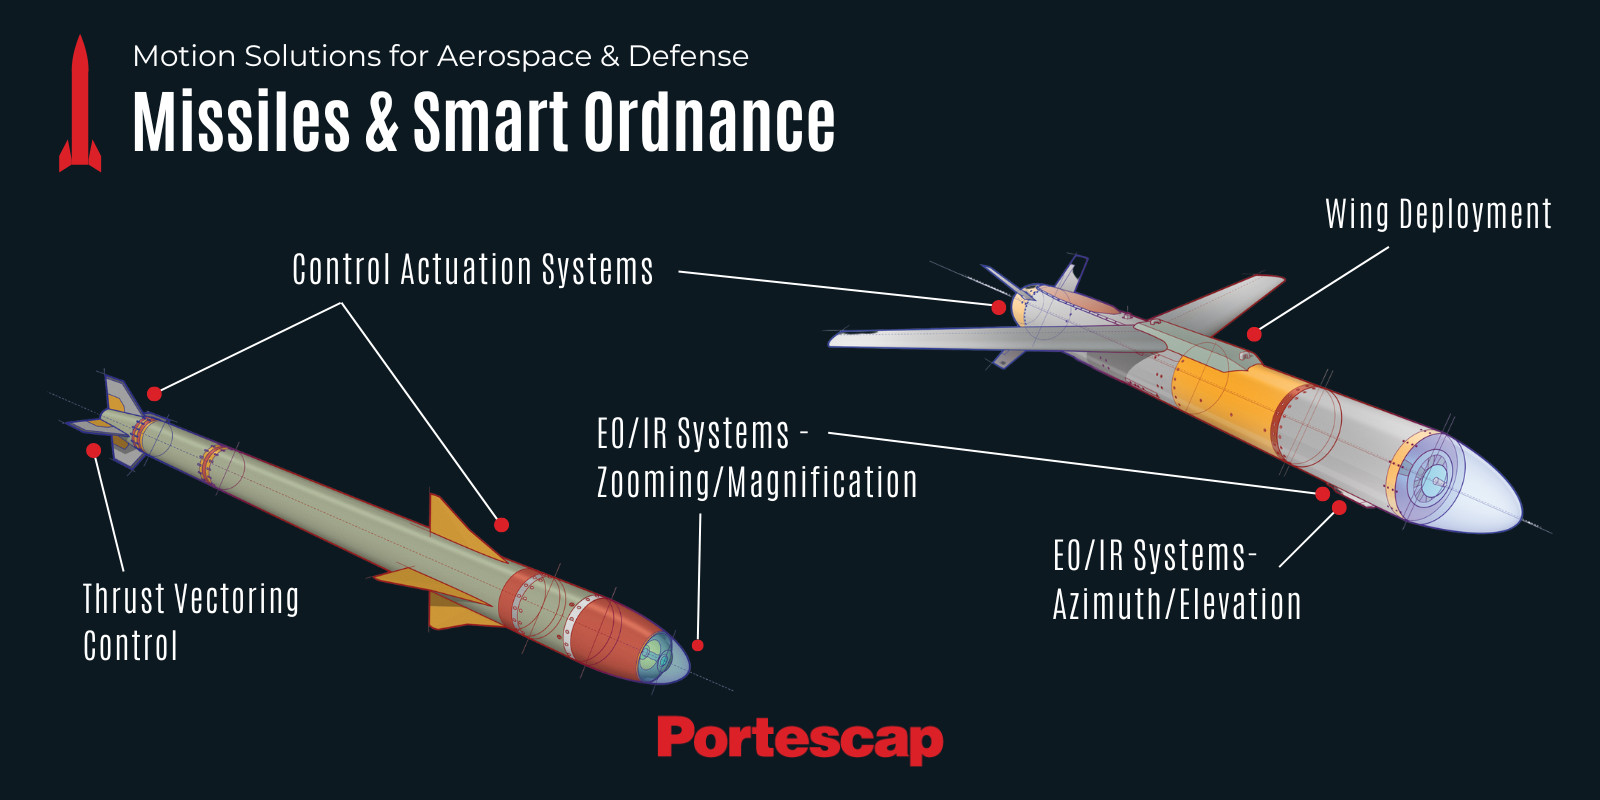 Les solutions de mouvement Portescap sont utilisées dans le développement de munitions intelligentes.